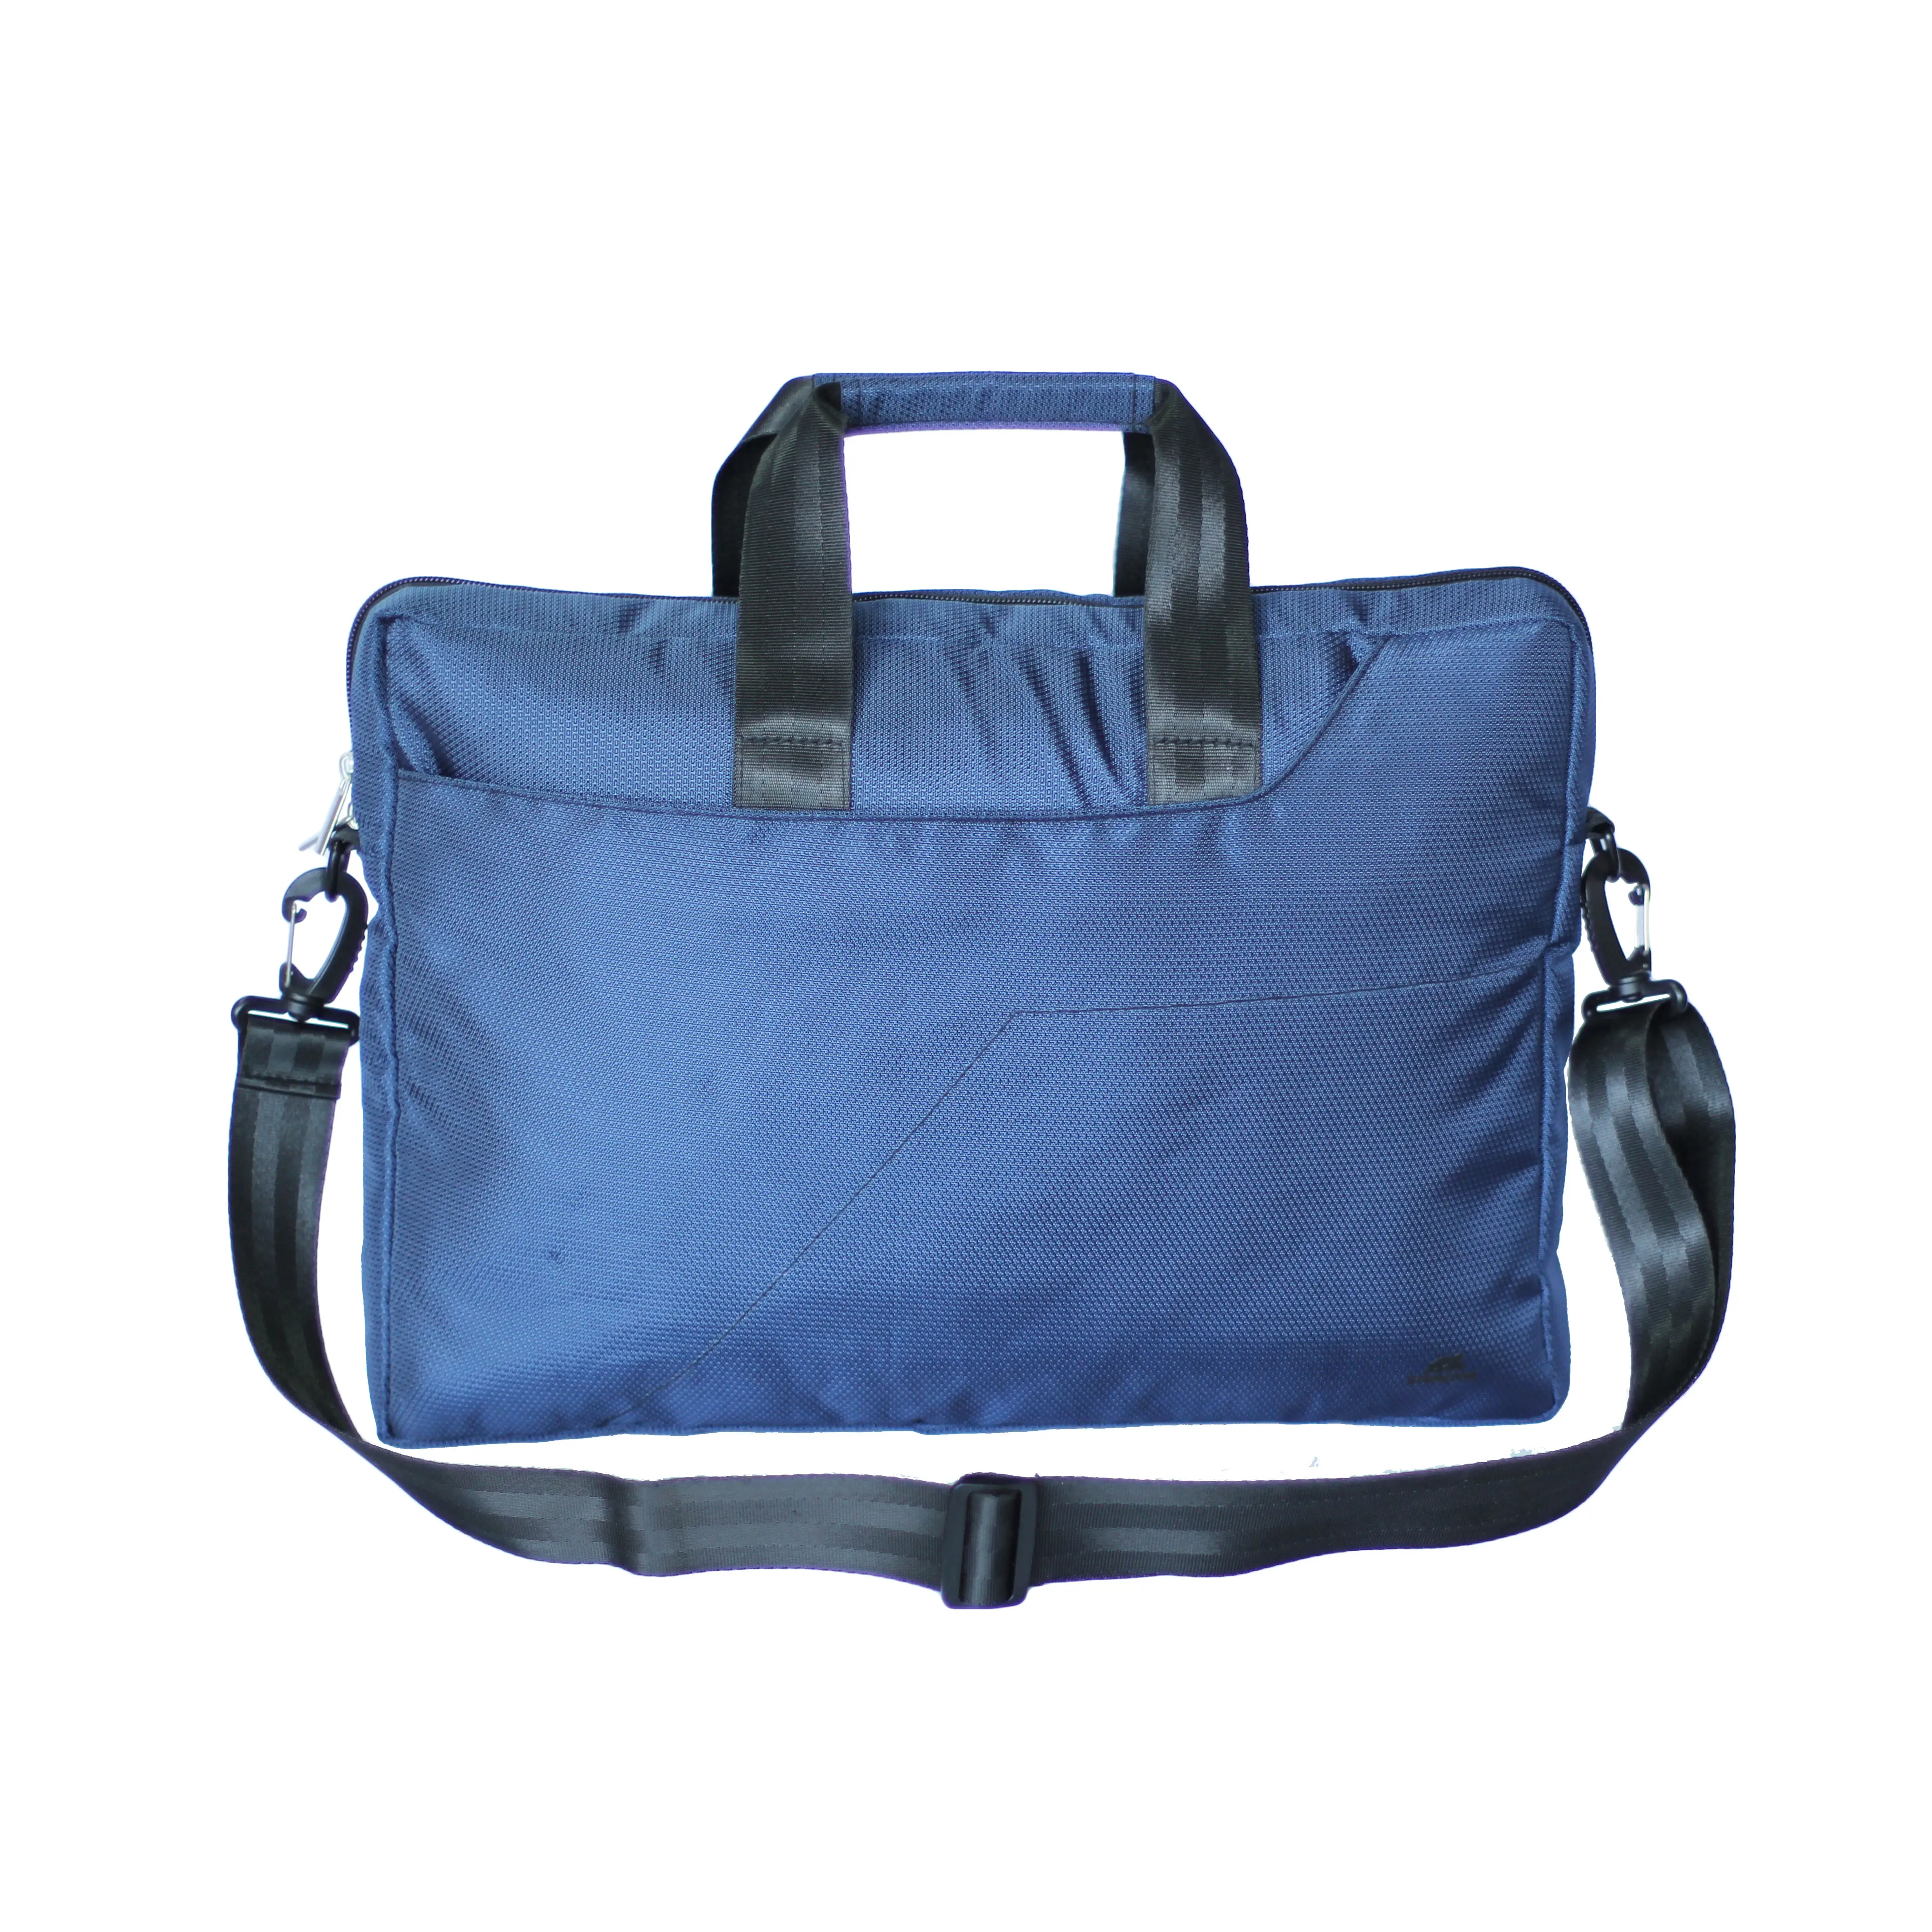 15 inch Jacquard oem business cases messenger tote laptop bag computer shoulder bags